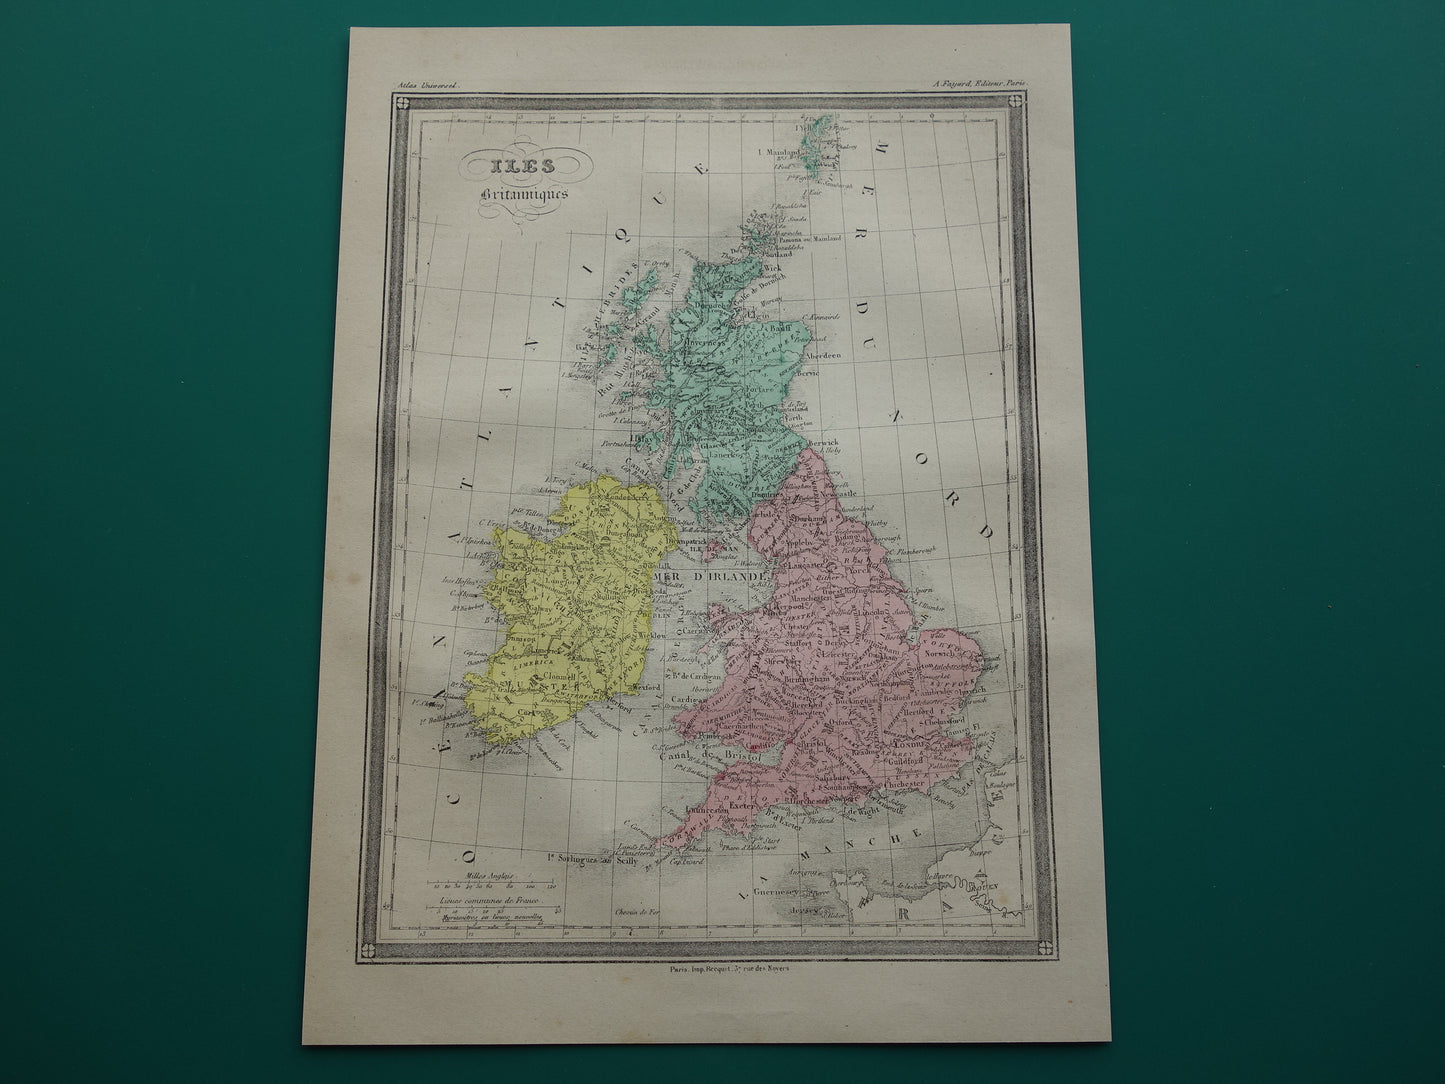 Britse Eilanden Oude kaart van Verenigd Koninkrijk en Ierland uit 1877 originele antieke landkaart